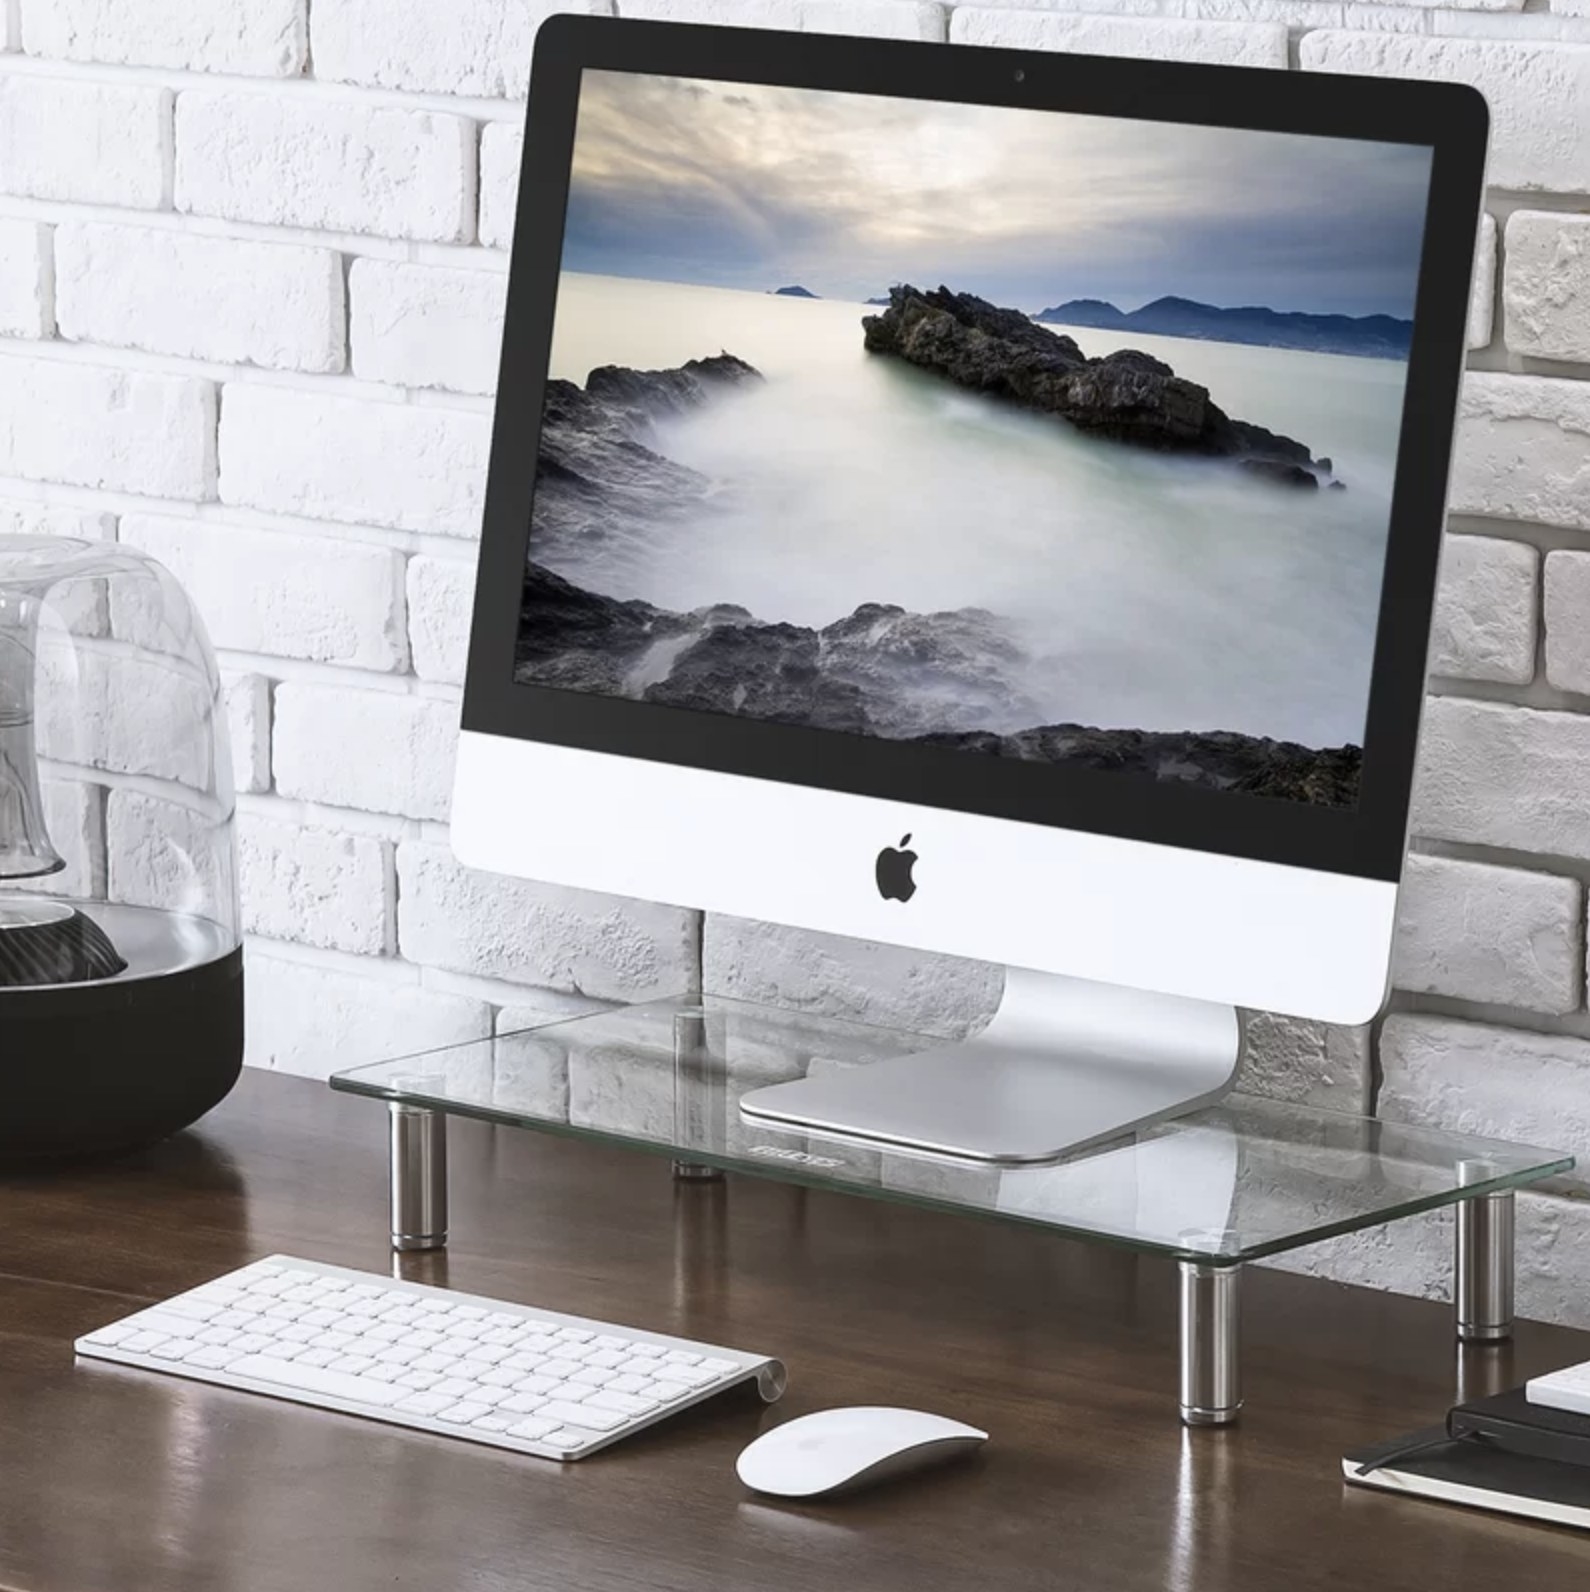 The desktop standing under an iMac